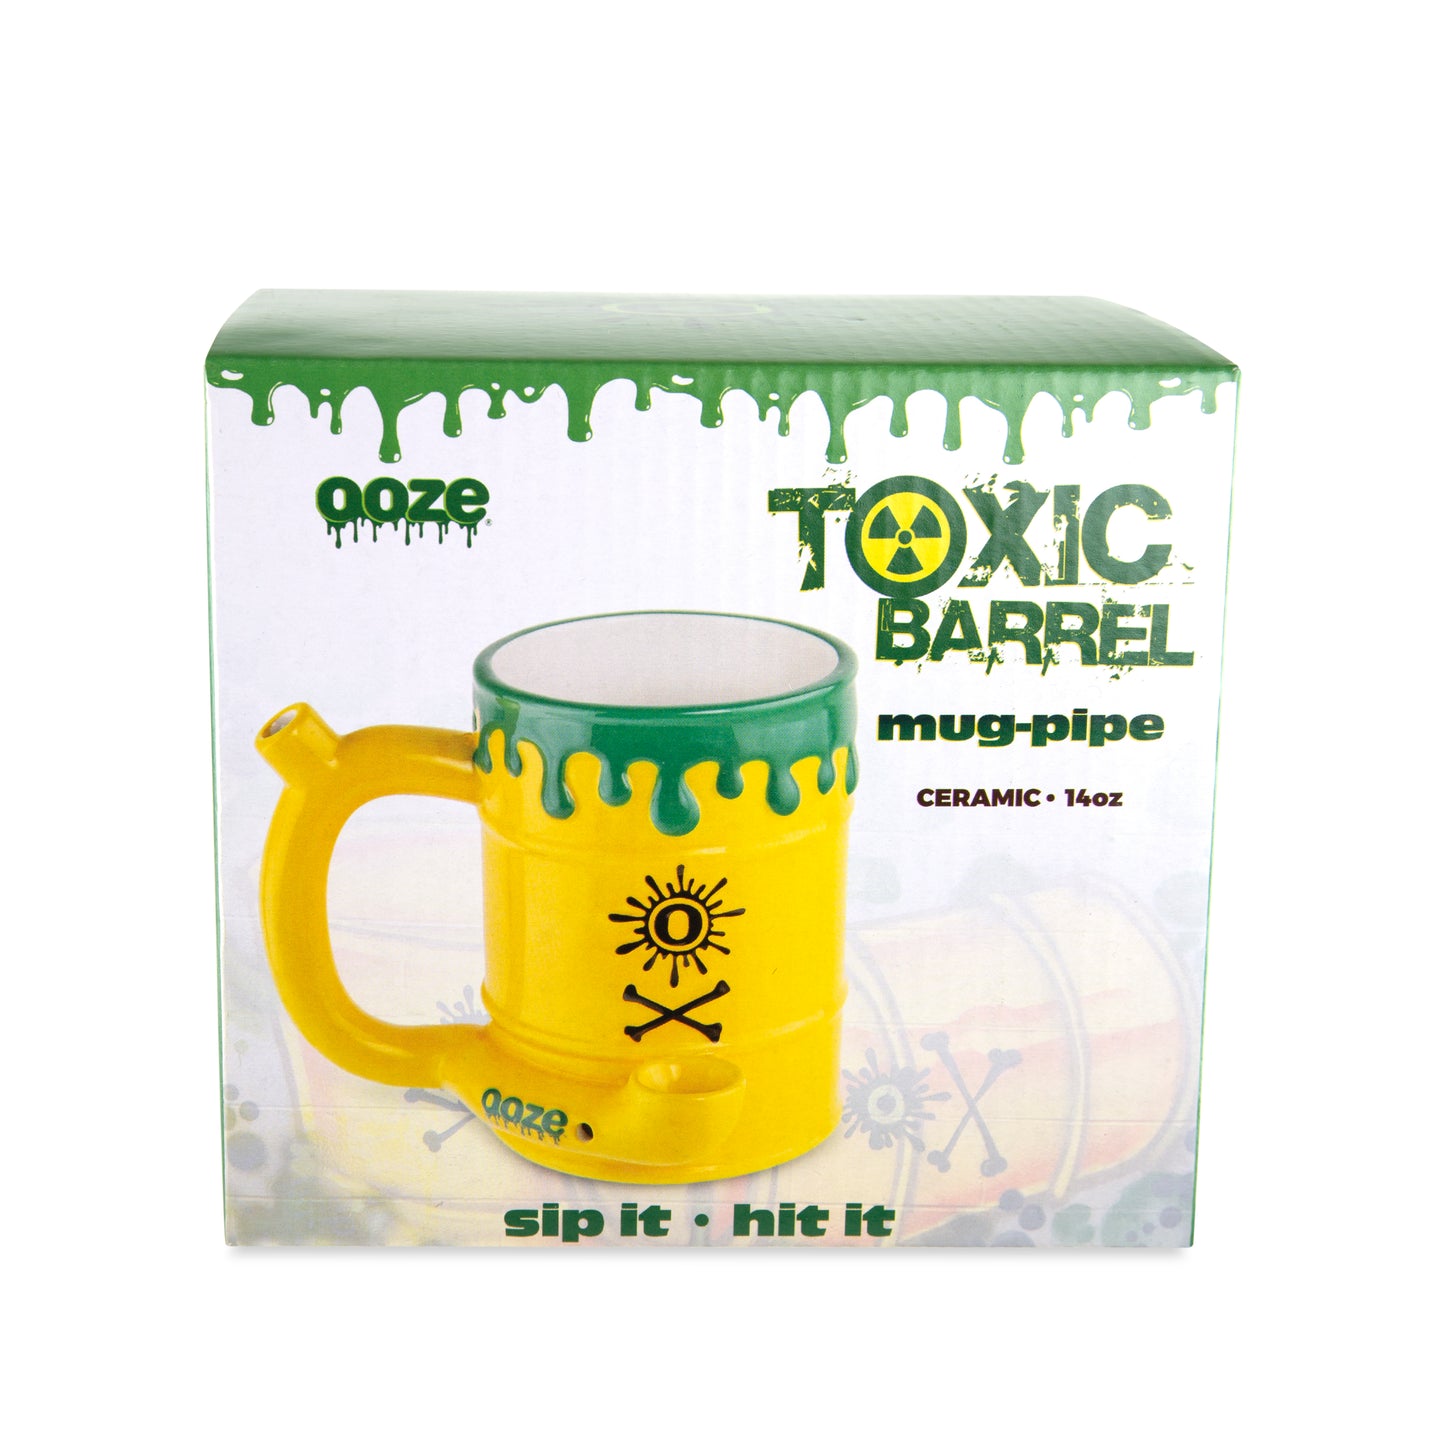 Ooze Ceramic Wake & Bake Mug Pipe - Toxic Waste Barrel